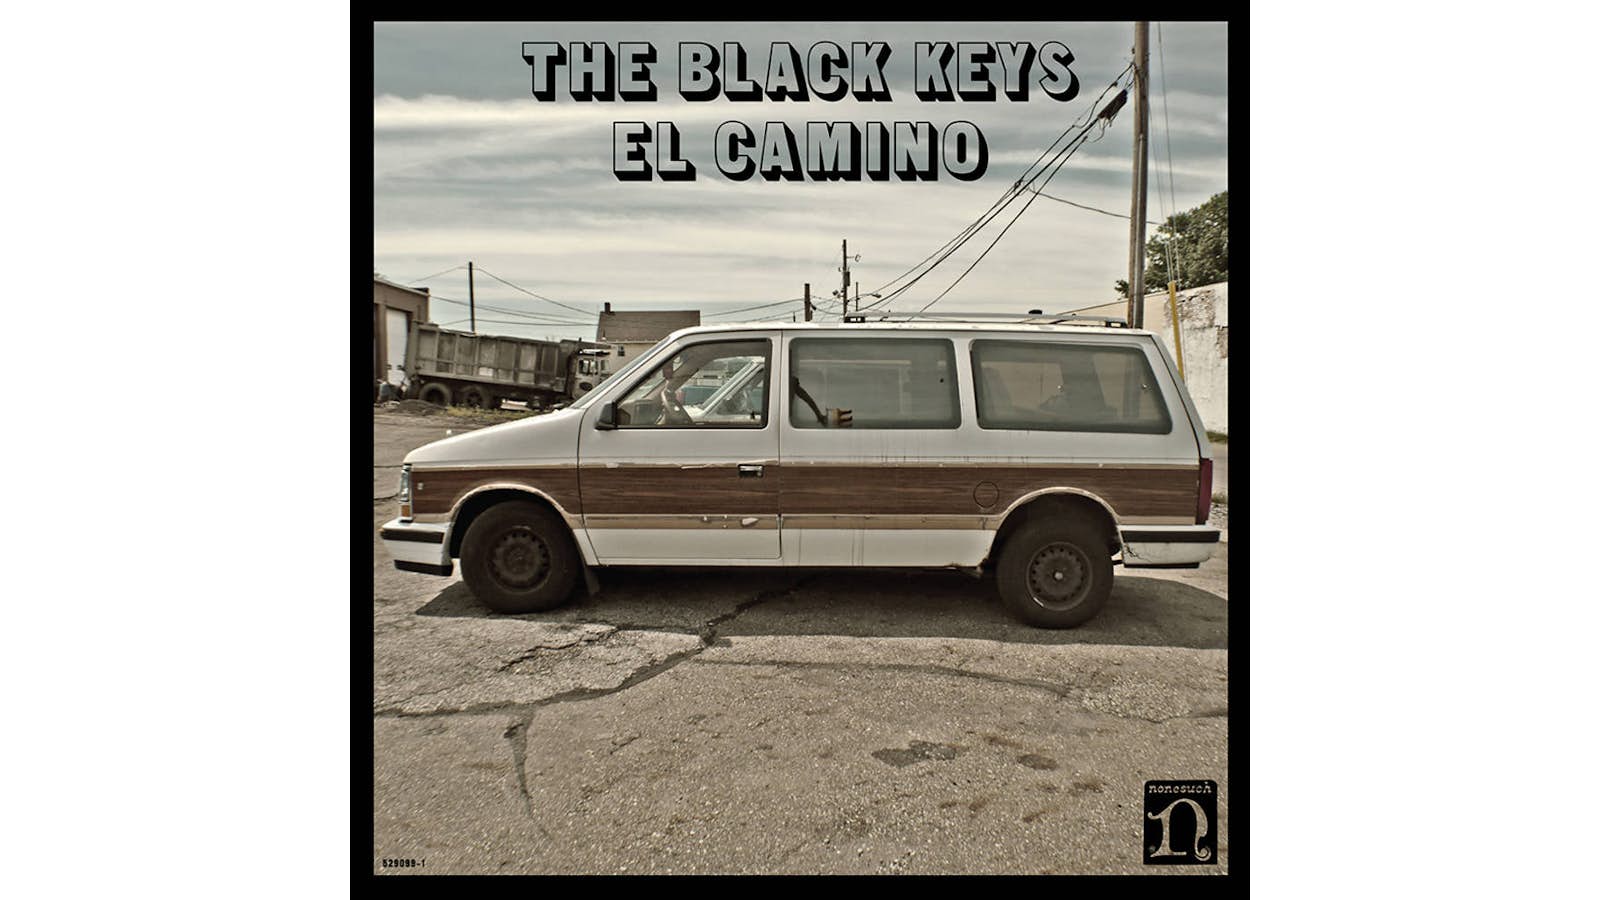 Black Keys - El Camino (10th Anniversary) [Deluxe Edition]